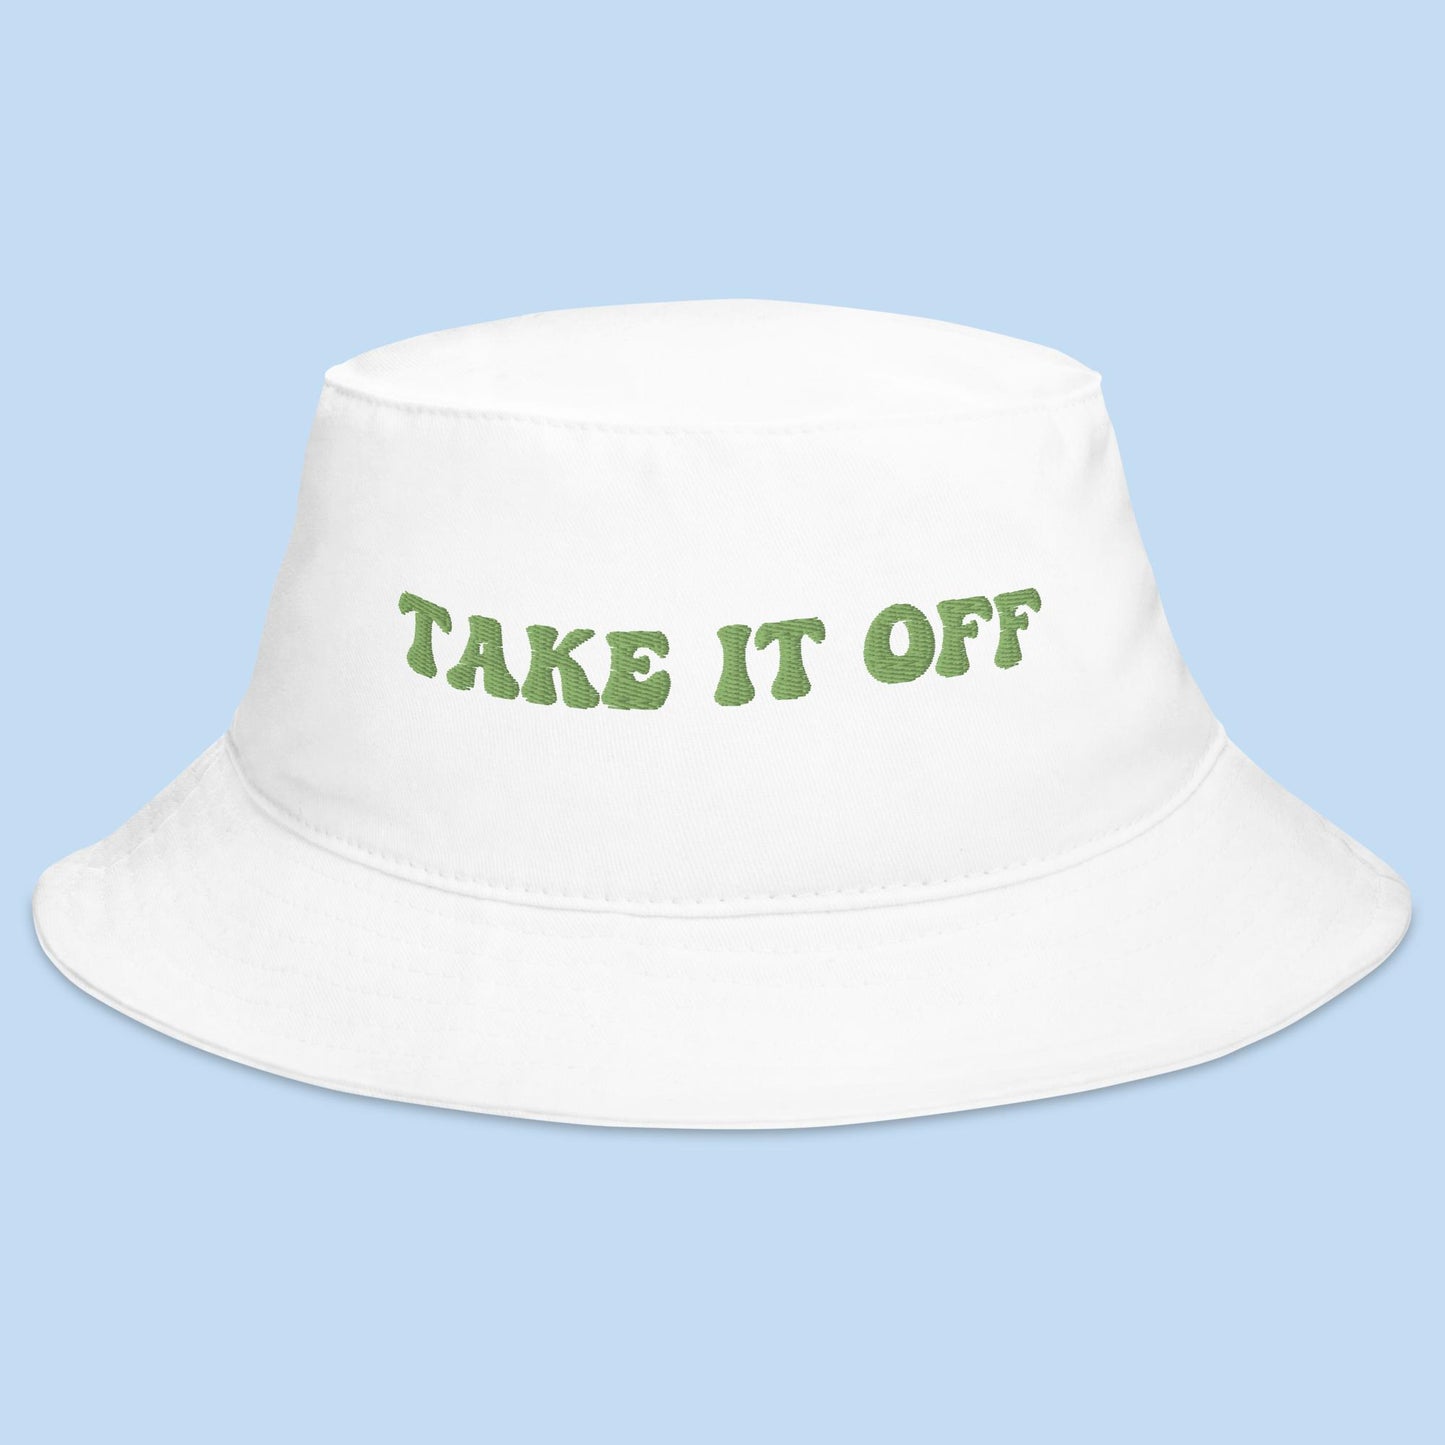 Take It Off Bucket Hat